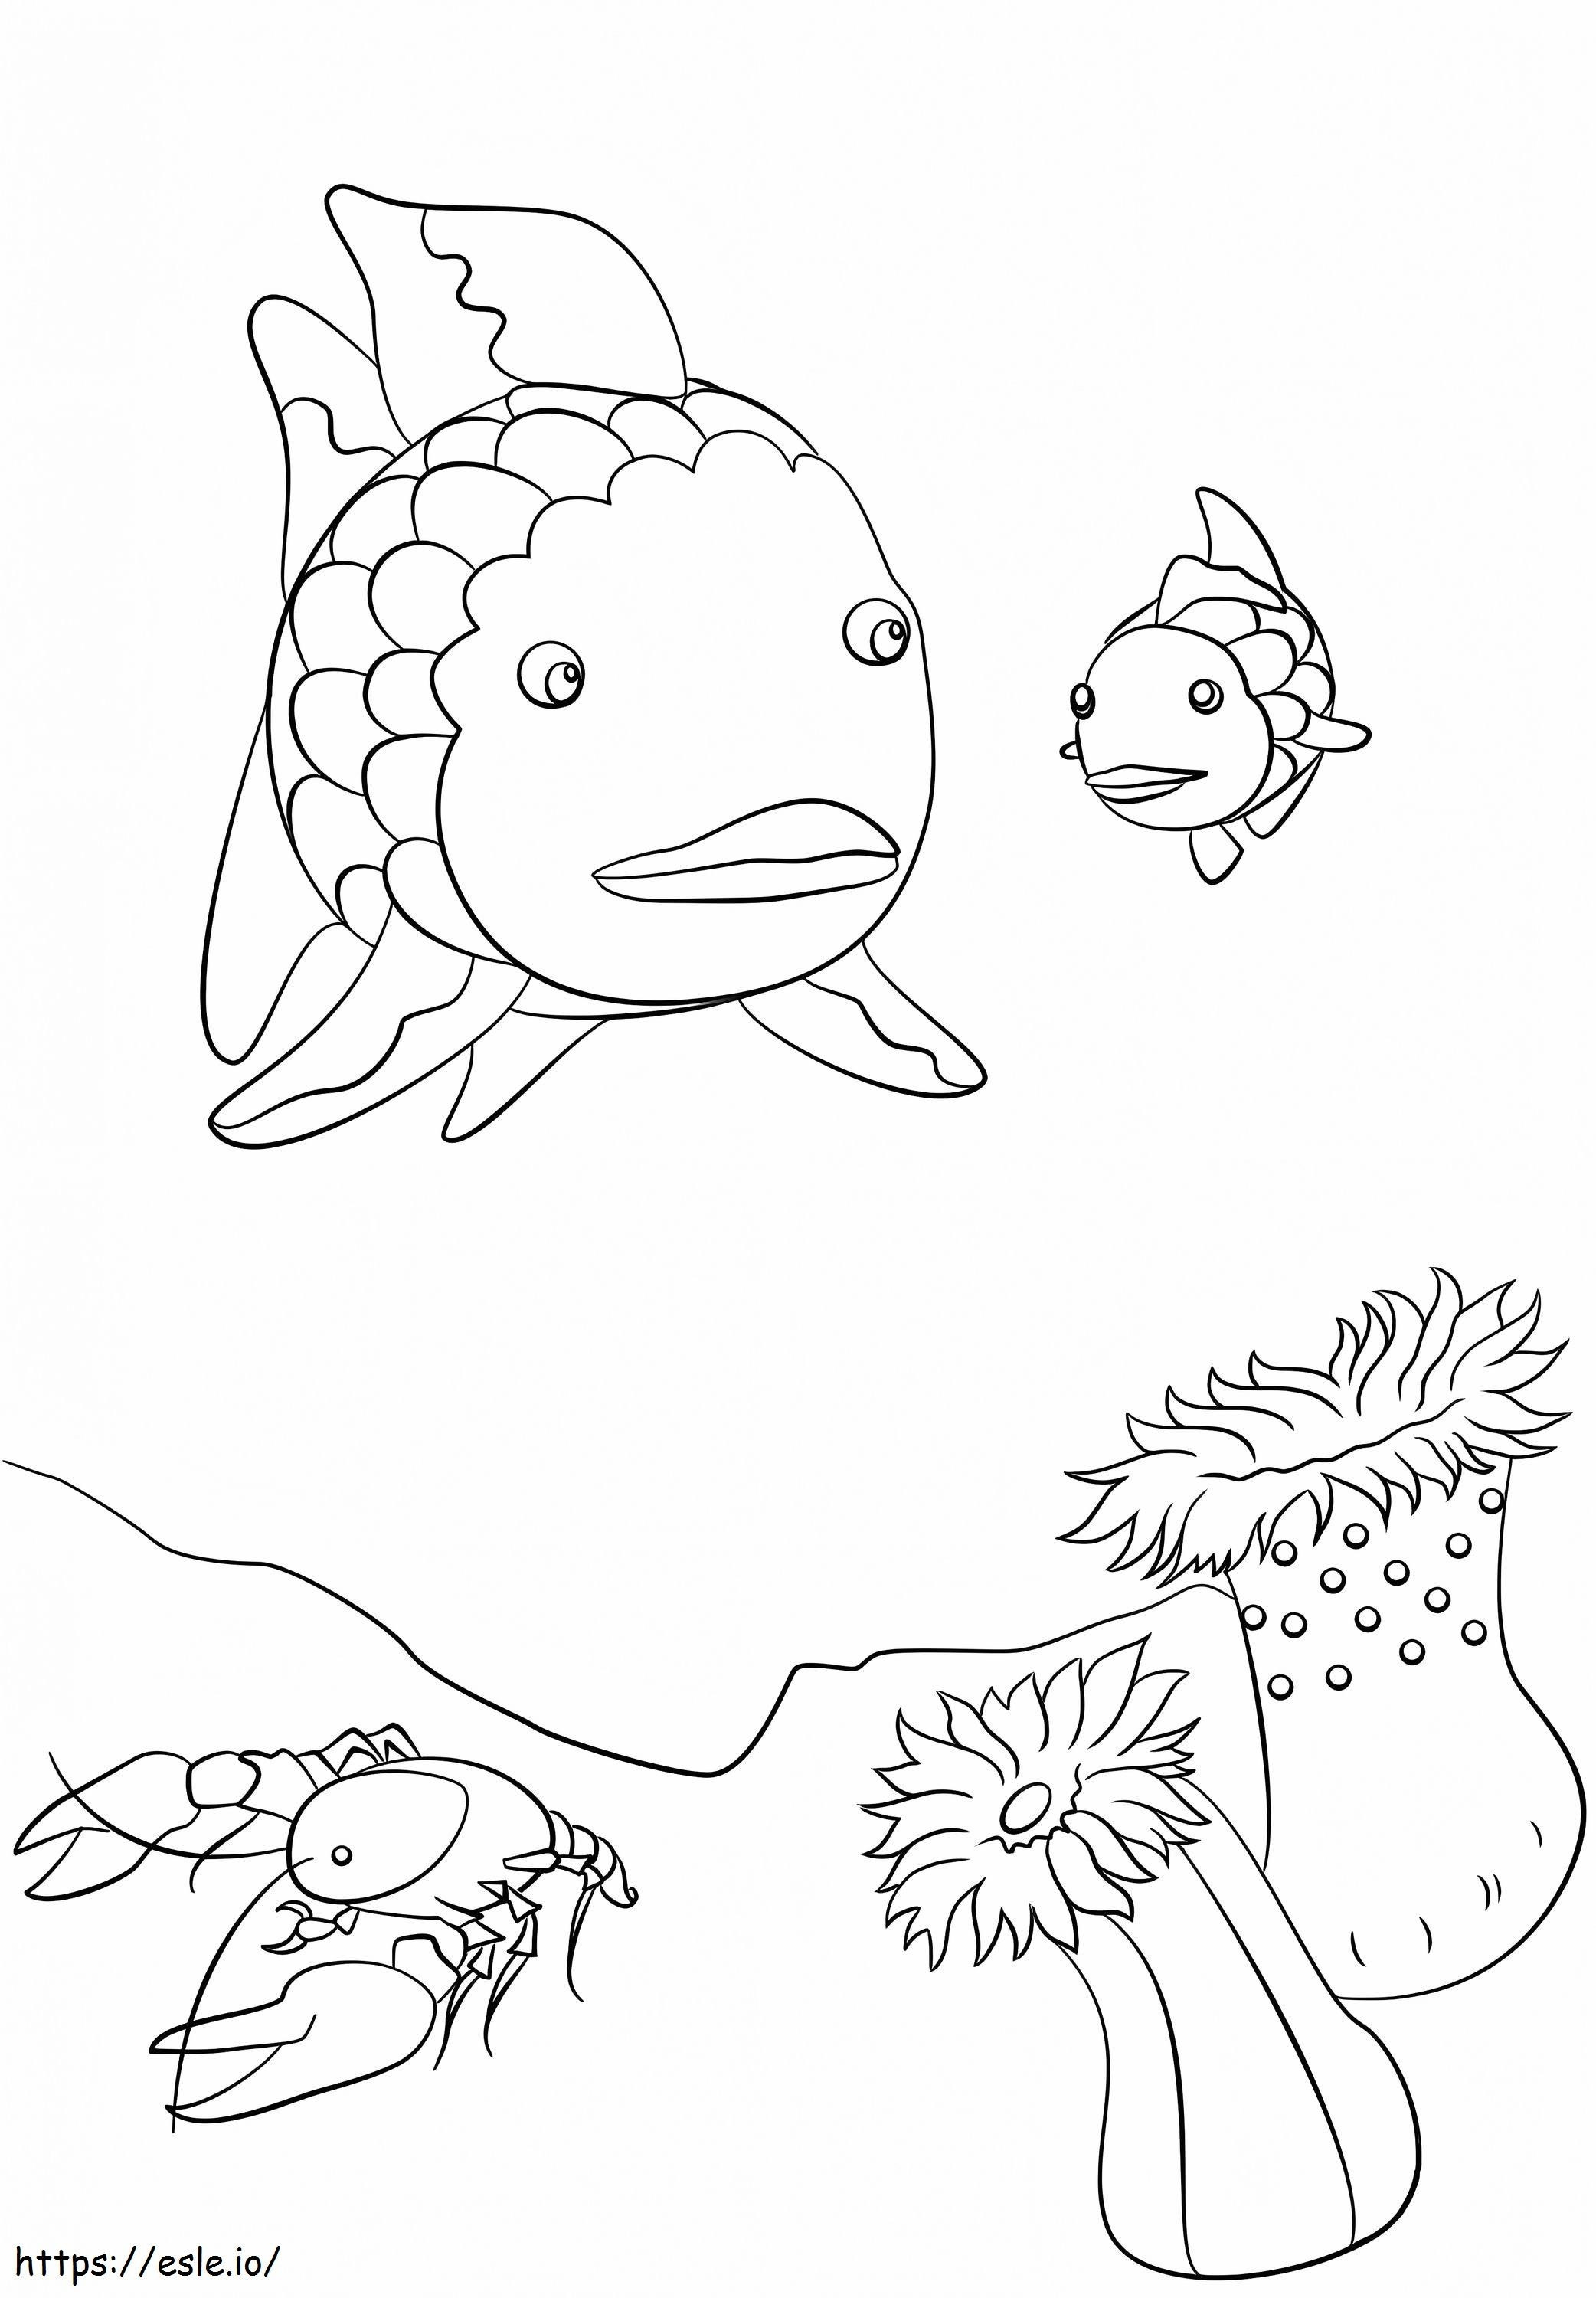 Regenbogenfisch, Hummer und kleine Fische ausmalbilder